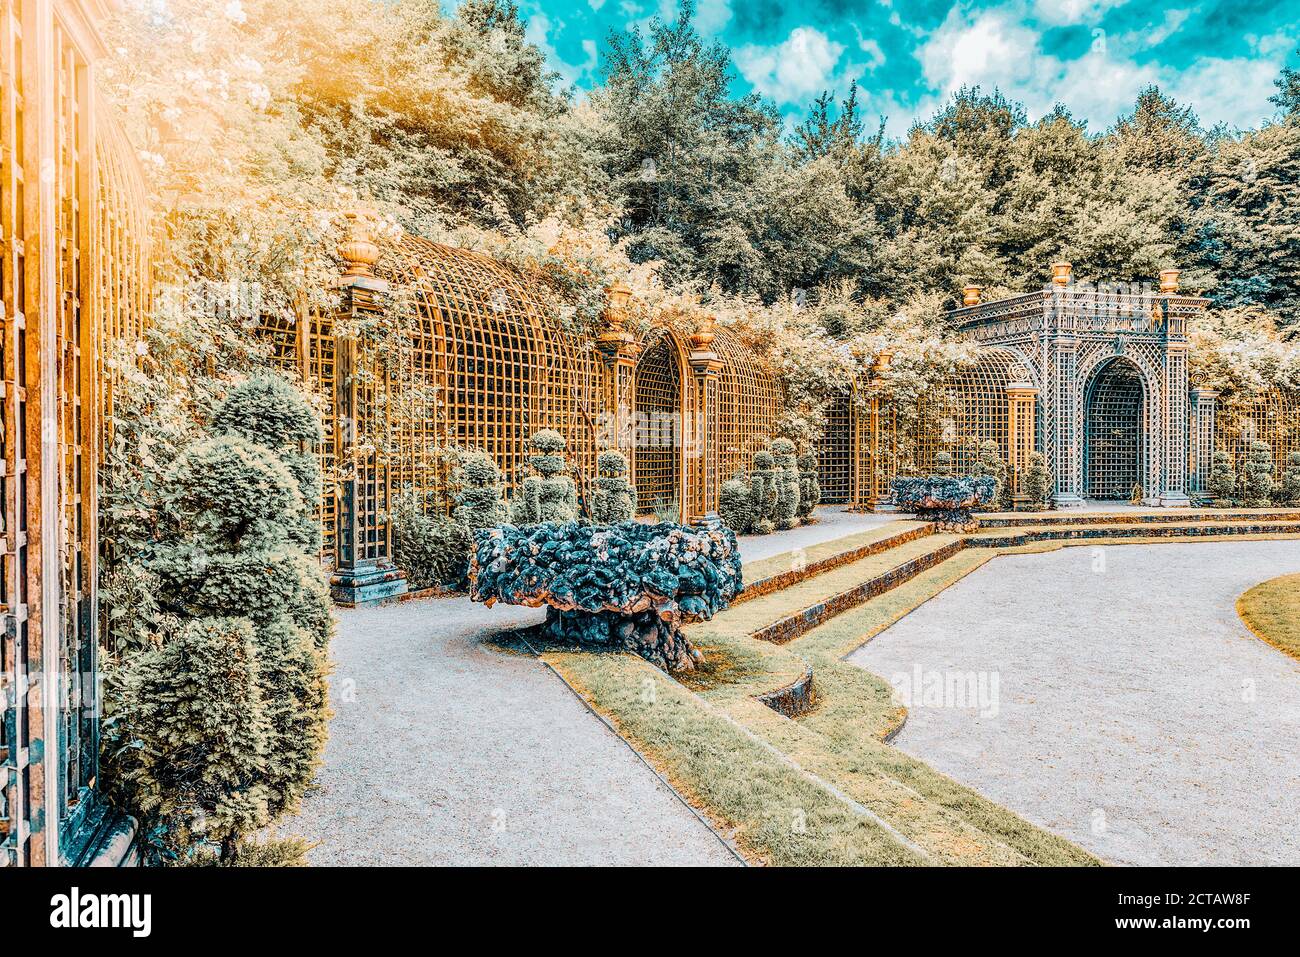 Fontaine de l'escalade dans un magnifique parc en Europe - Versailles. France Banque D'Images